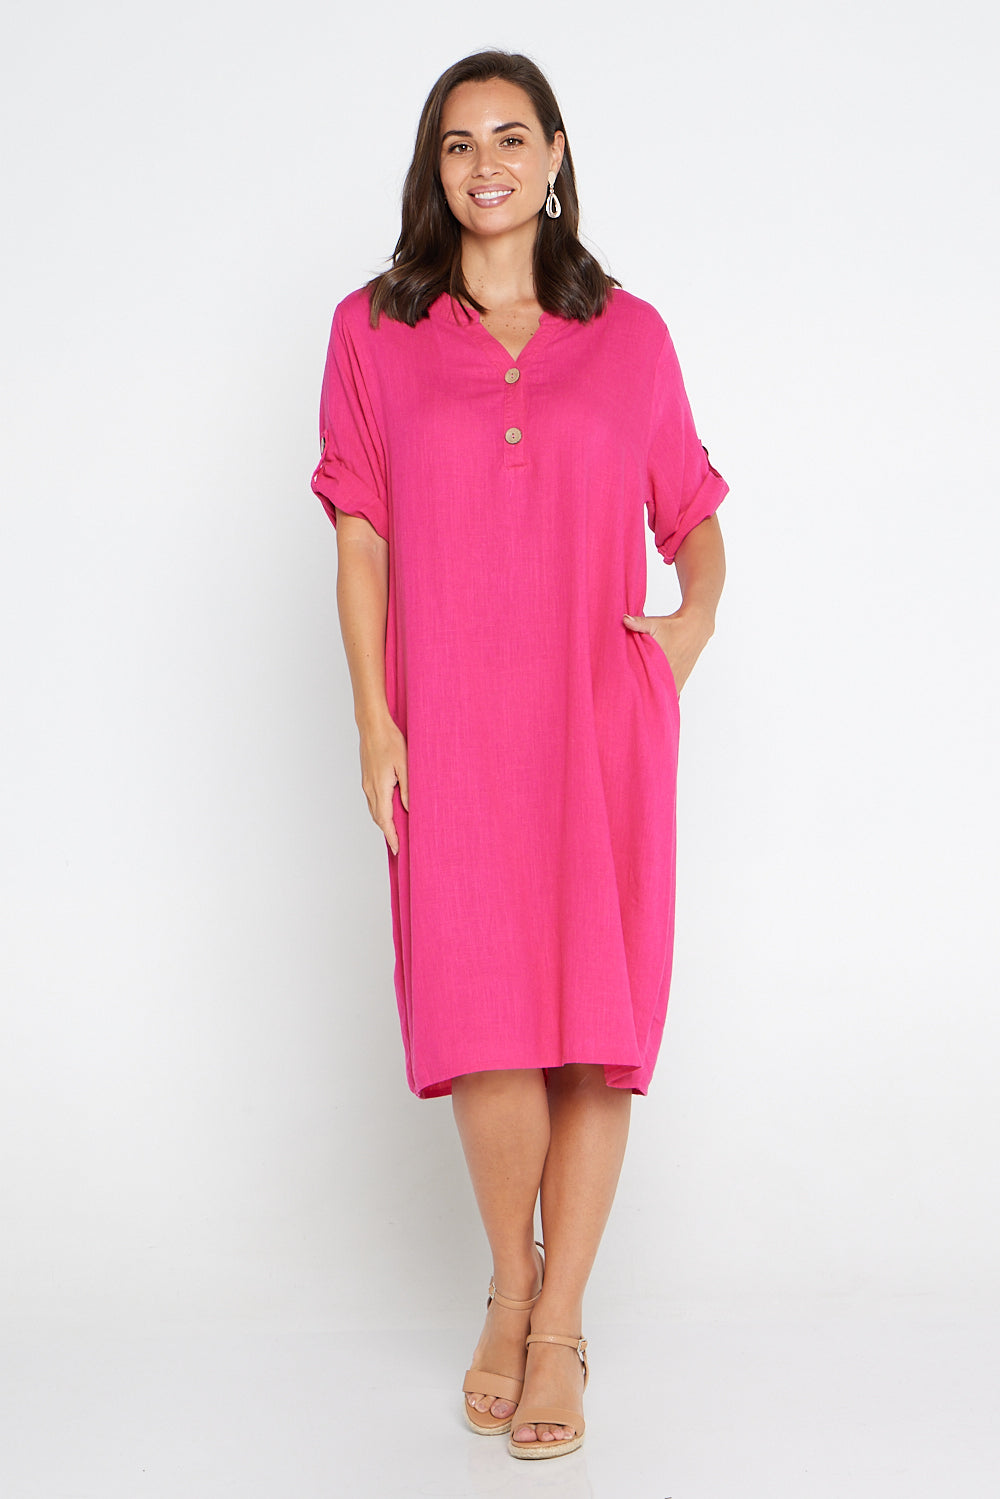 Gigi Cotton Tunic Dress - Hot Pink